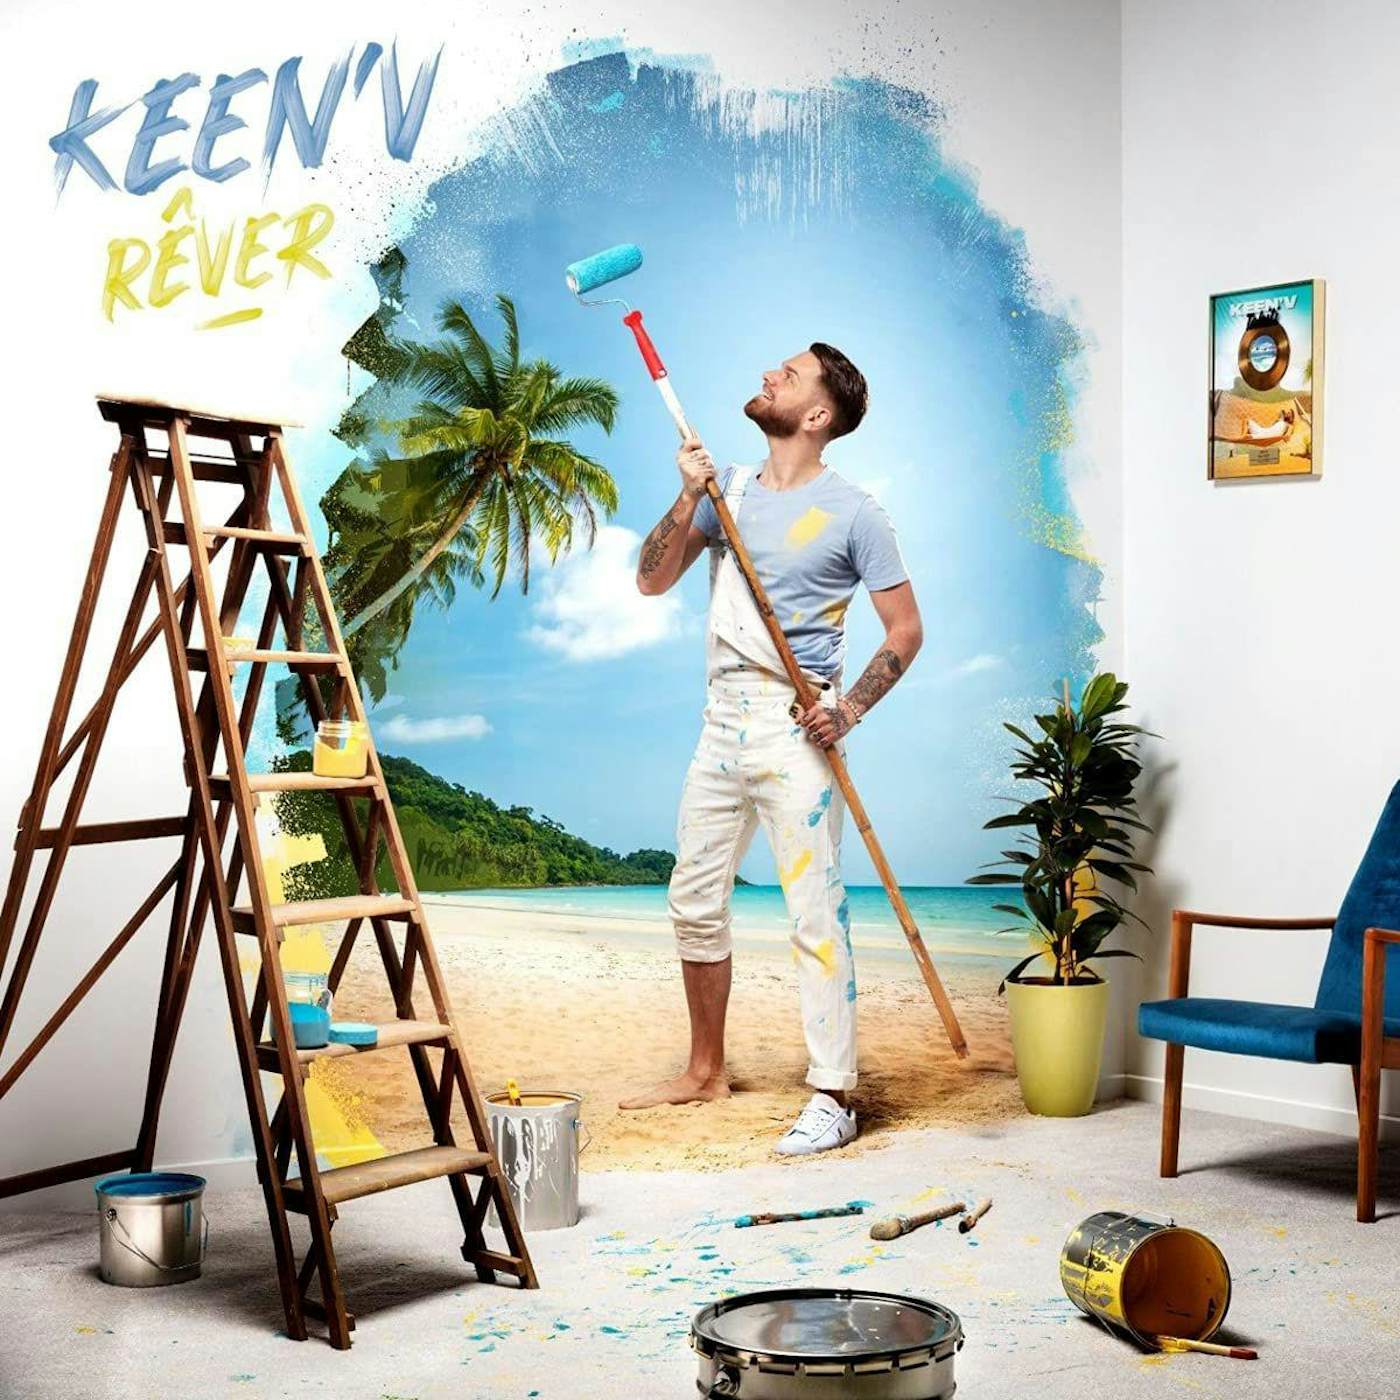 Keen' V 223752 REVER Vinyl Record